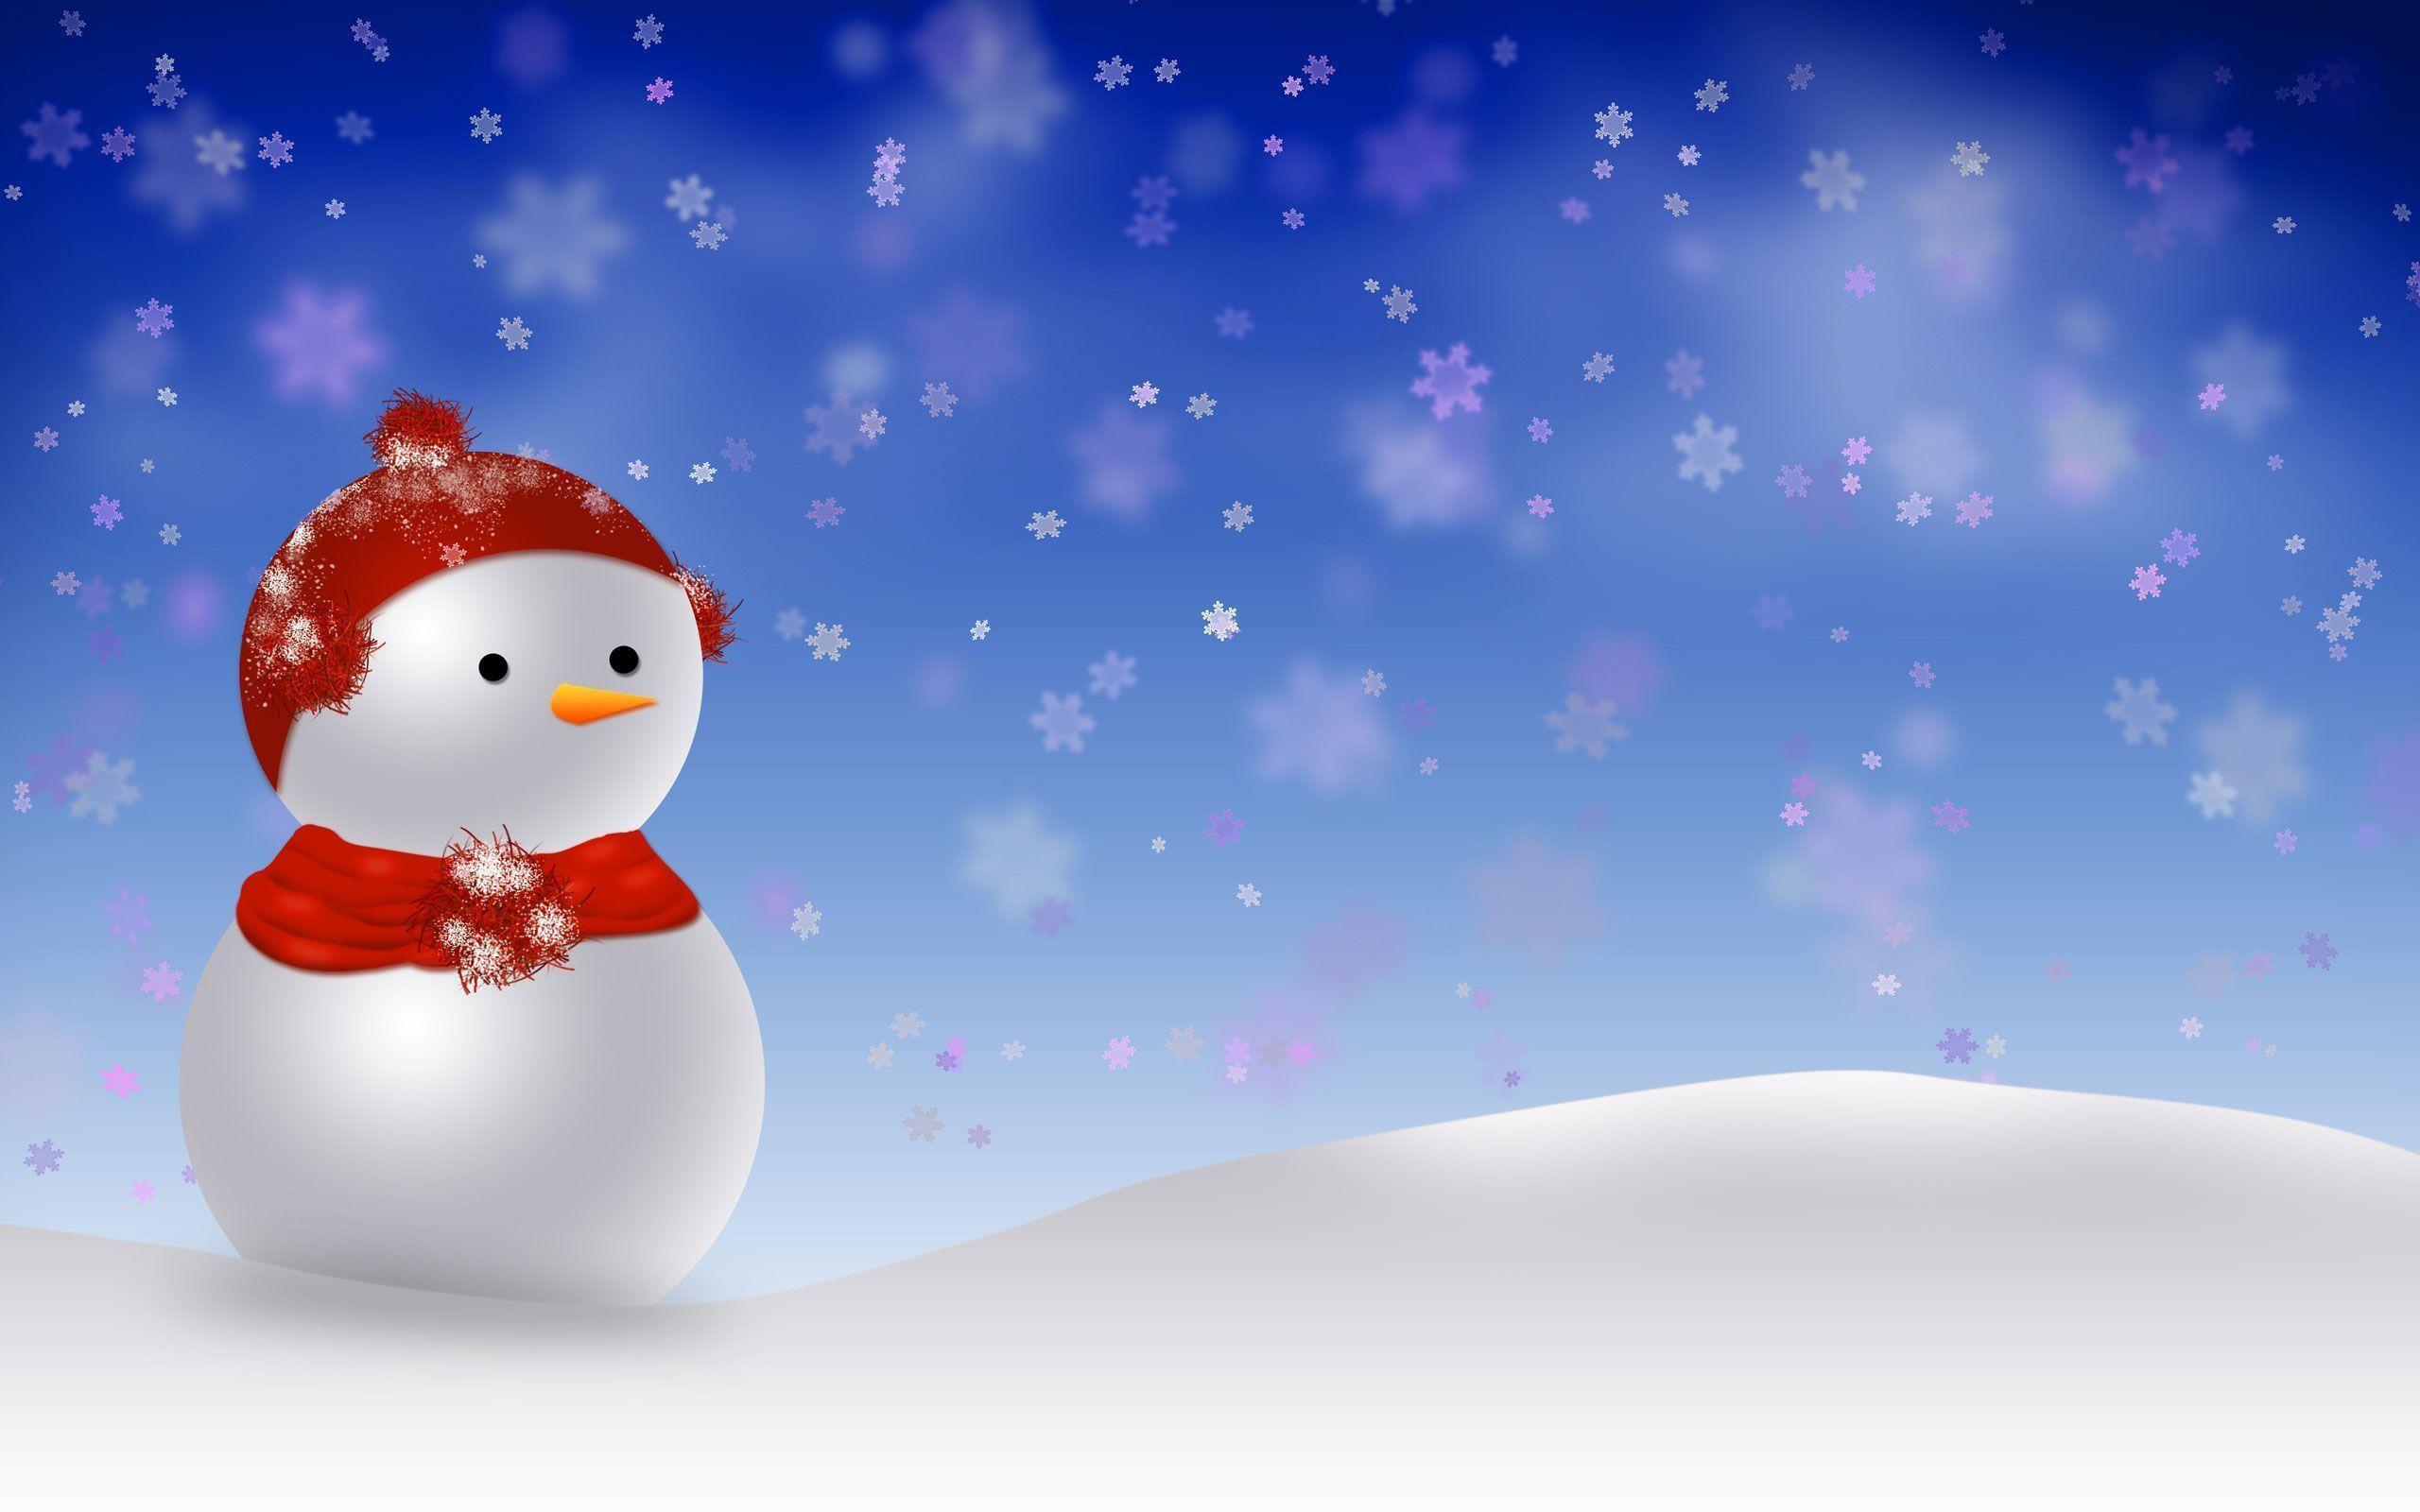 Snowman Christmas Wallpaper